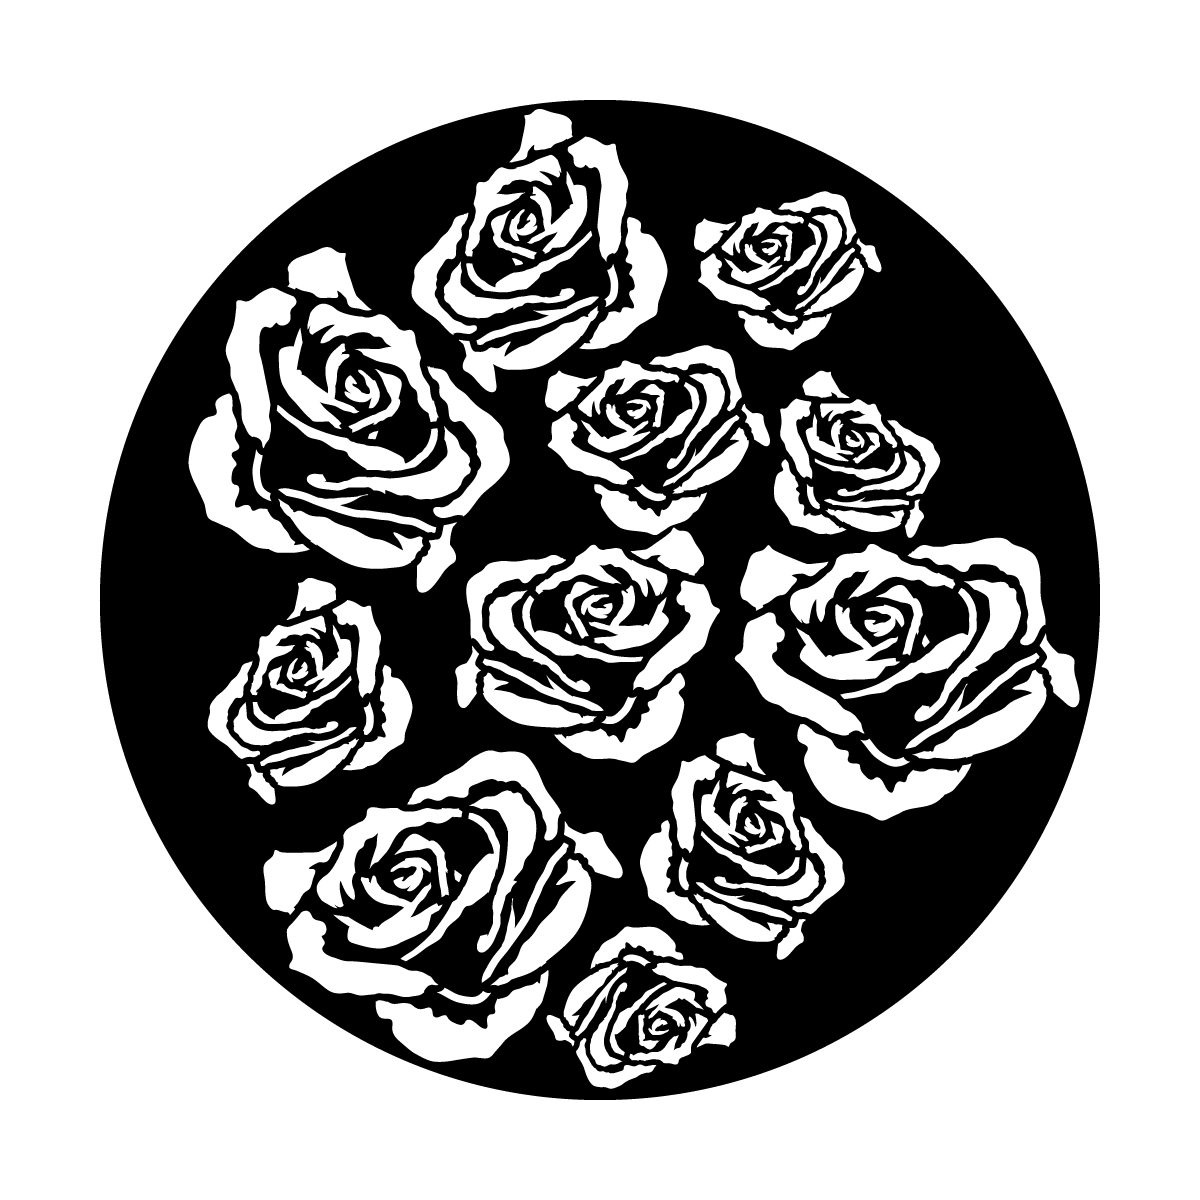 ME-1062 Breakup Roses